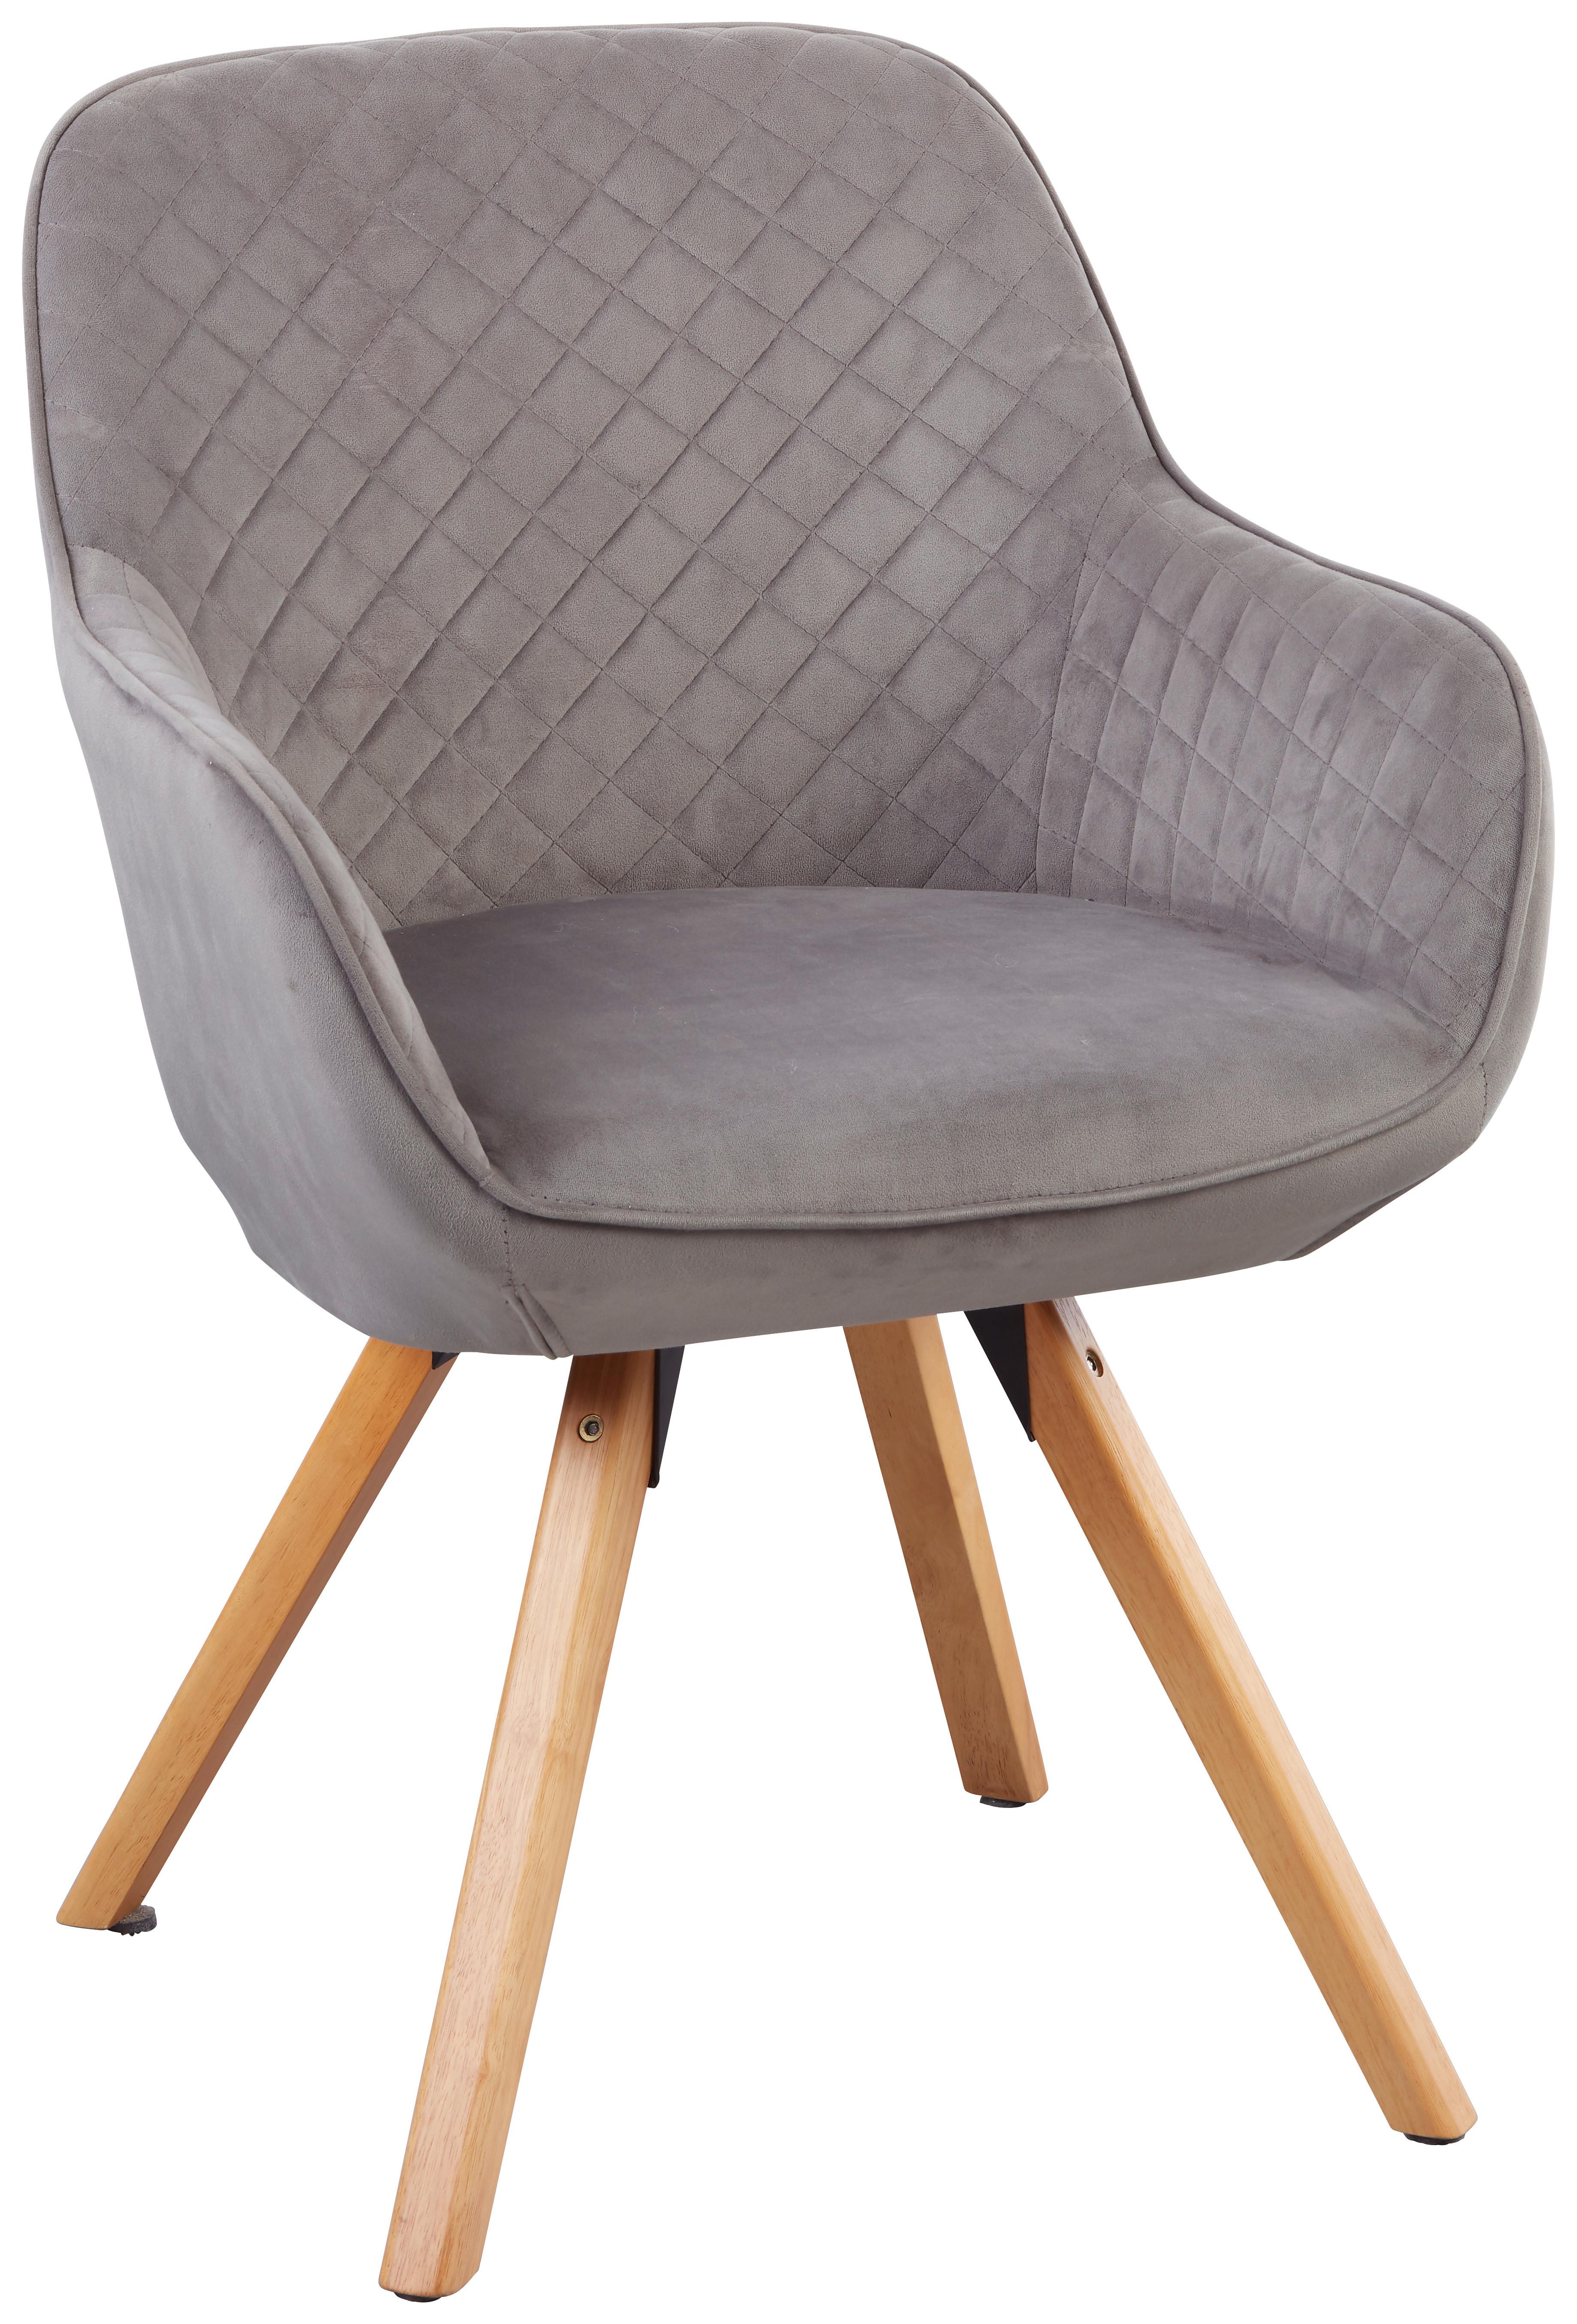 Stolička S Podrúčkami Bago - prírodné farby/sivá, Moderný, drevo/textil (58/85cm) - Modern Living